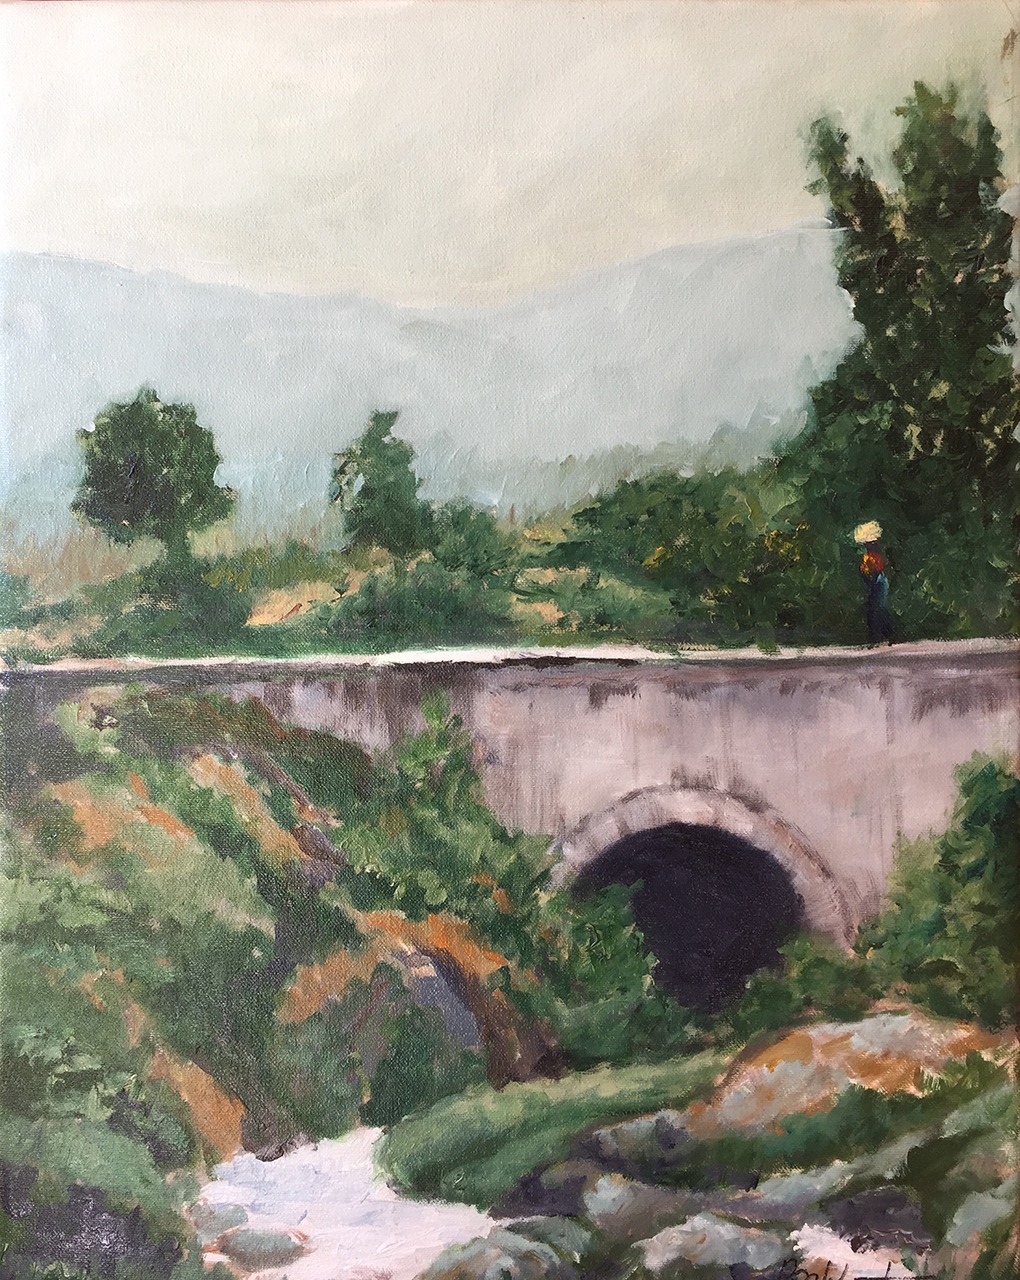 Nahuala Bridge - Brian M. Johnston - North American Impressionist artist - 16" x 20" - oil on canvas - US$. 1,500.